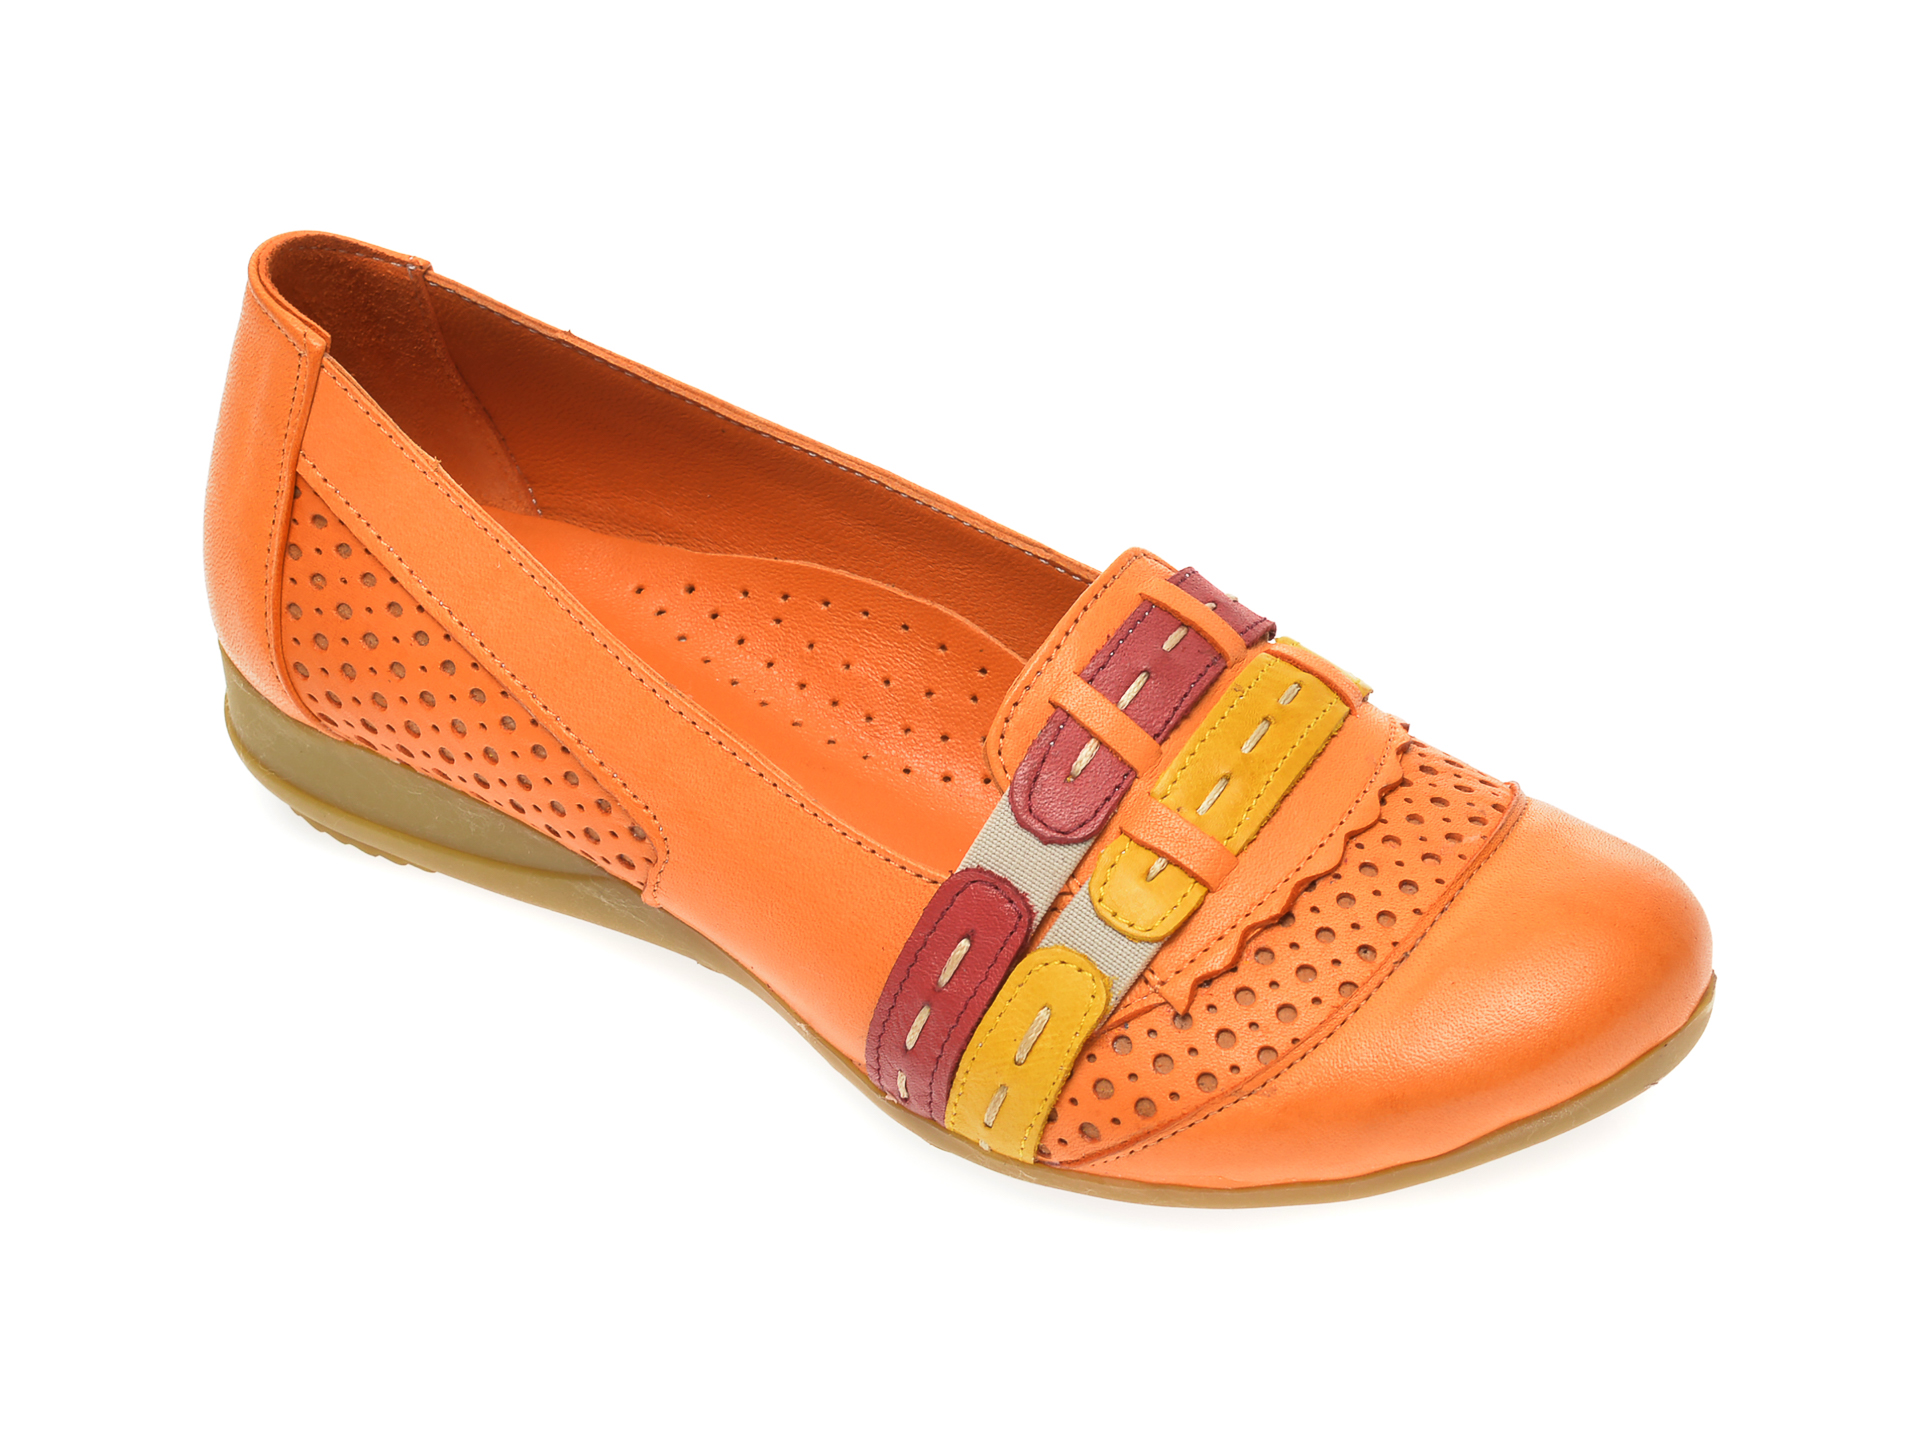 Pantofi FLAVIA PASSINI portocalii, B0304, din piele naturala